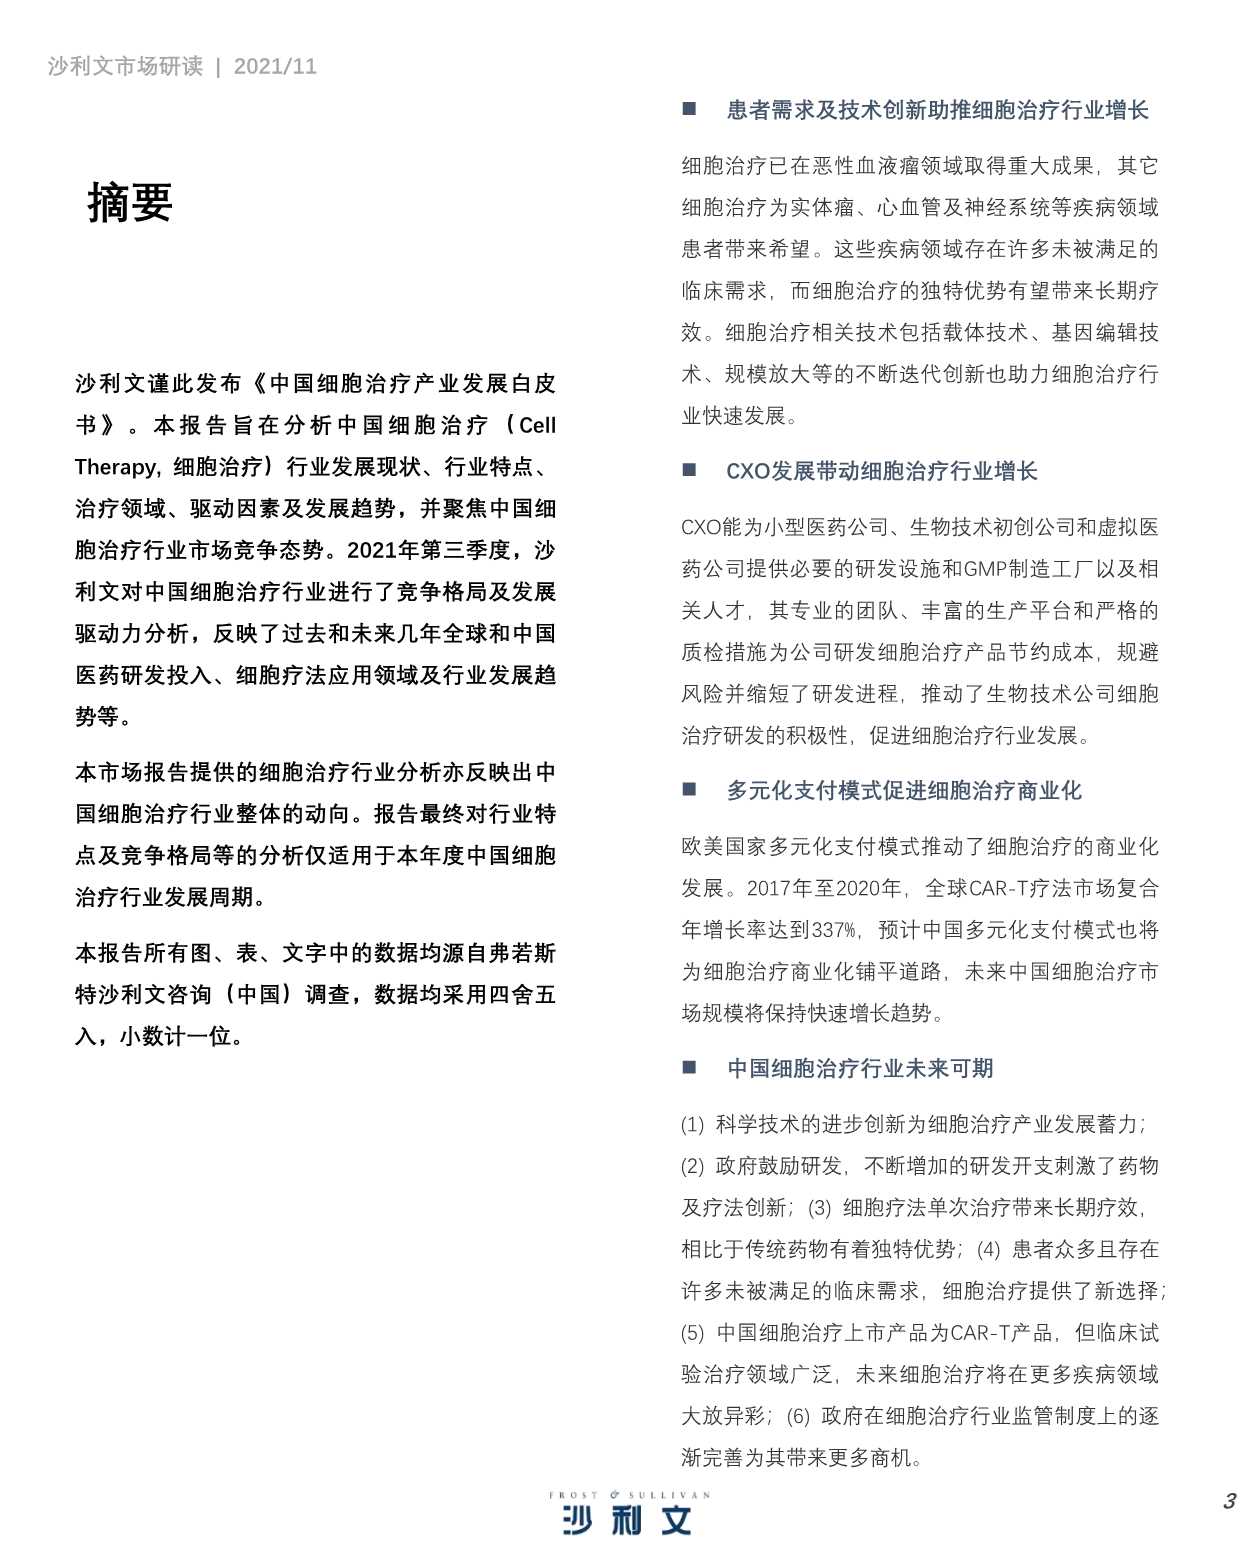 中国细胞治疗产业发展白皮书-2021.11-45页